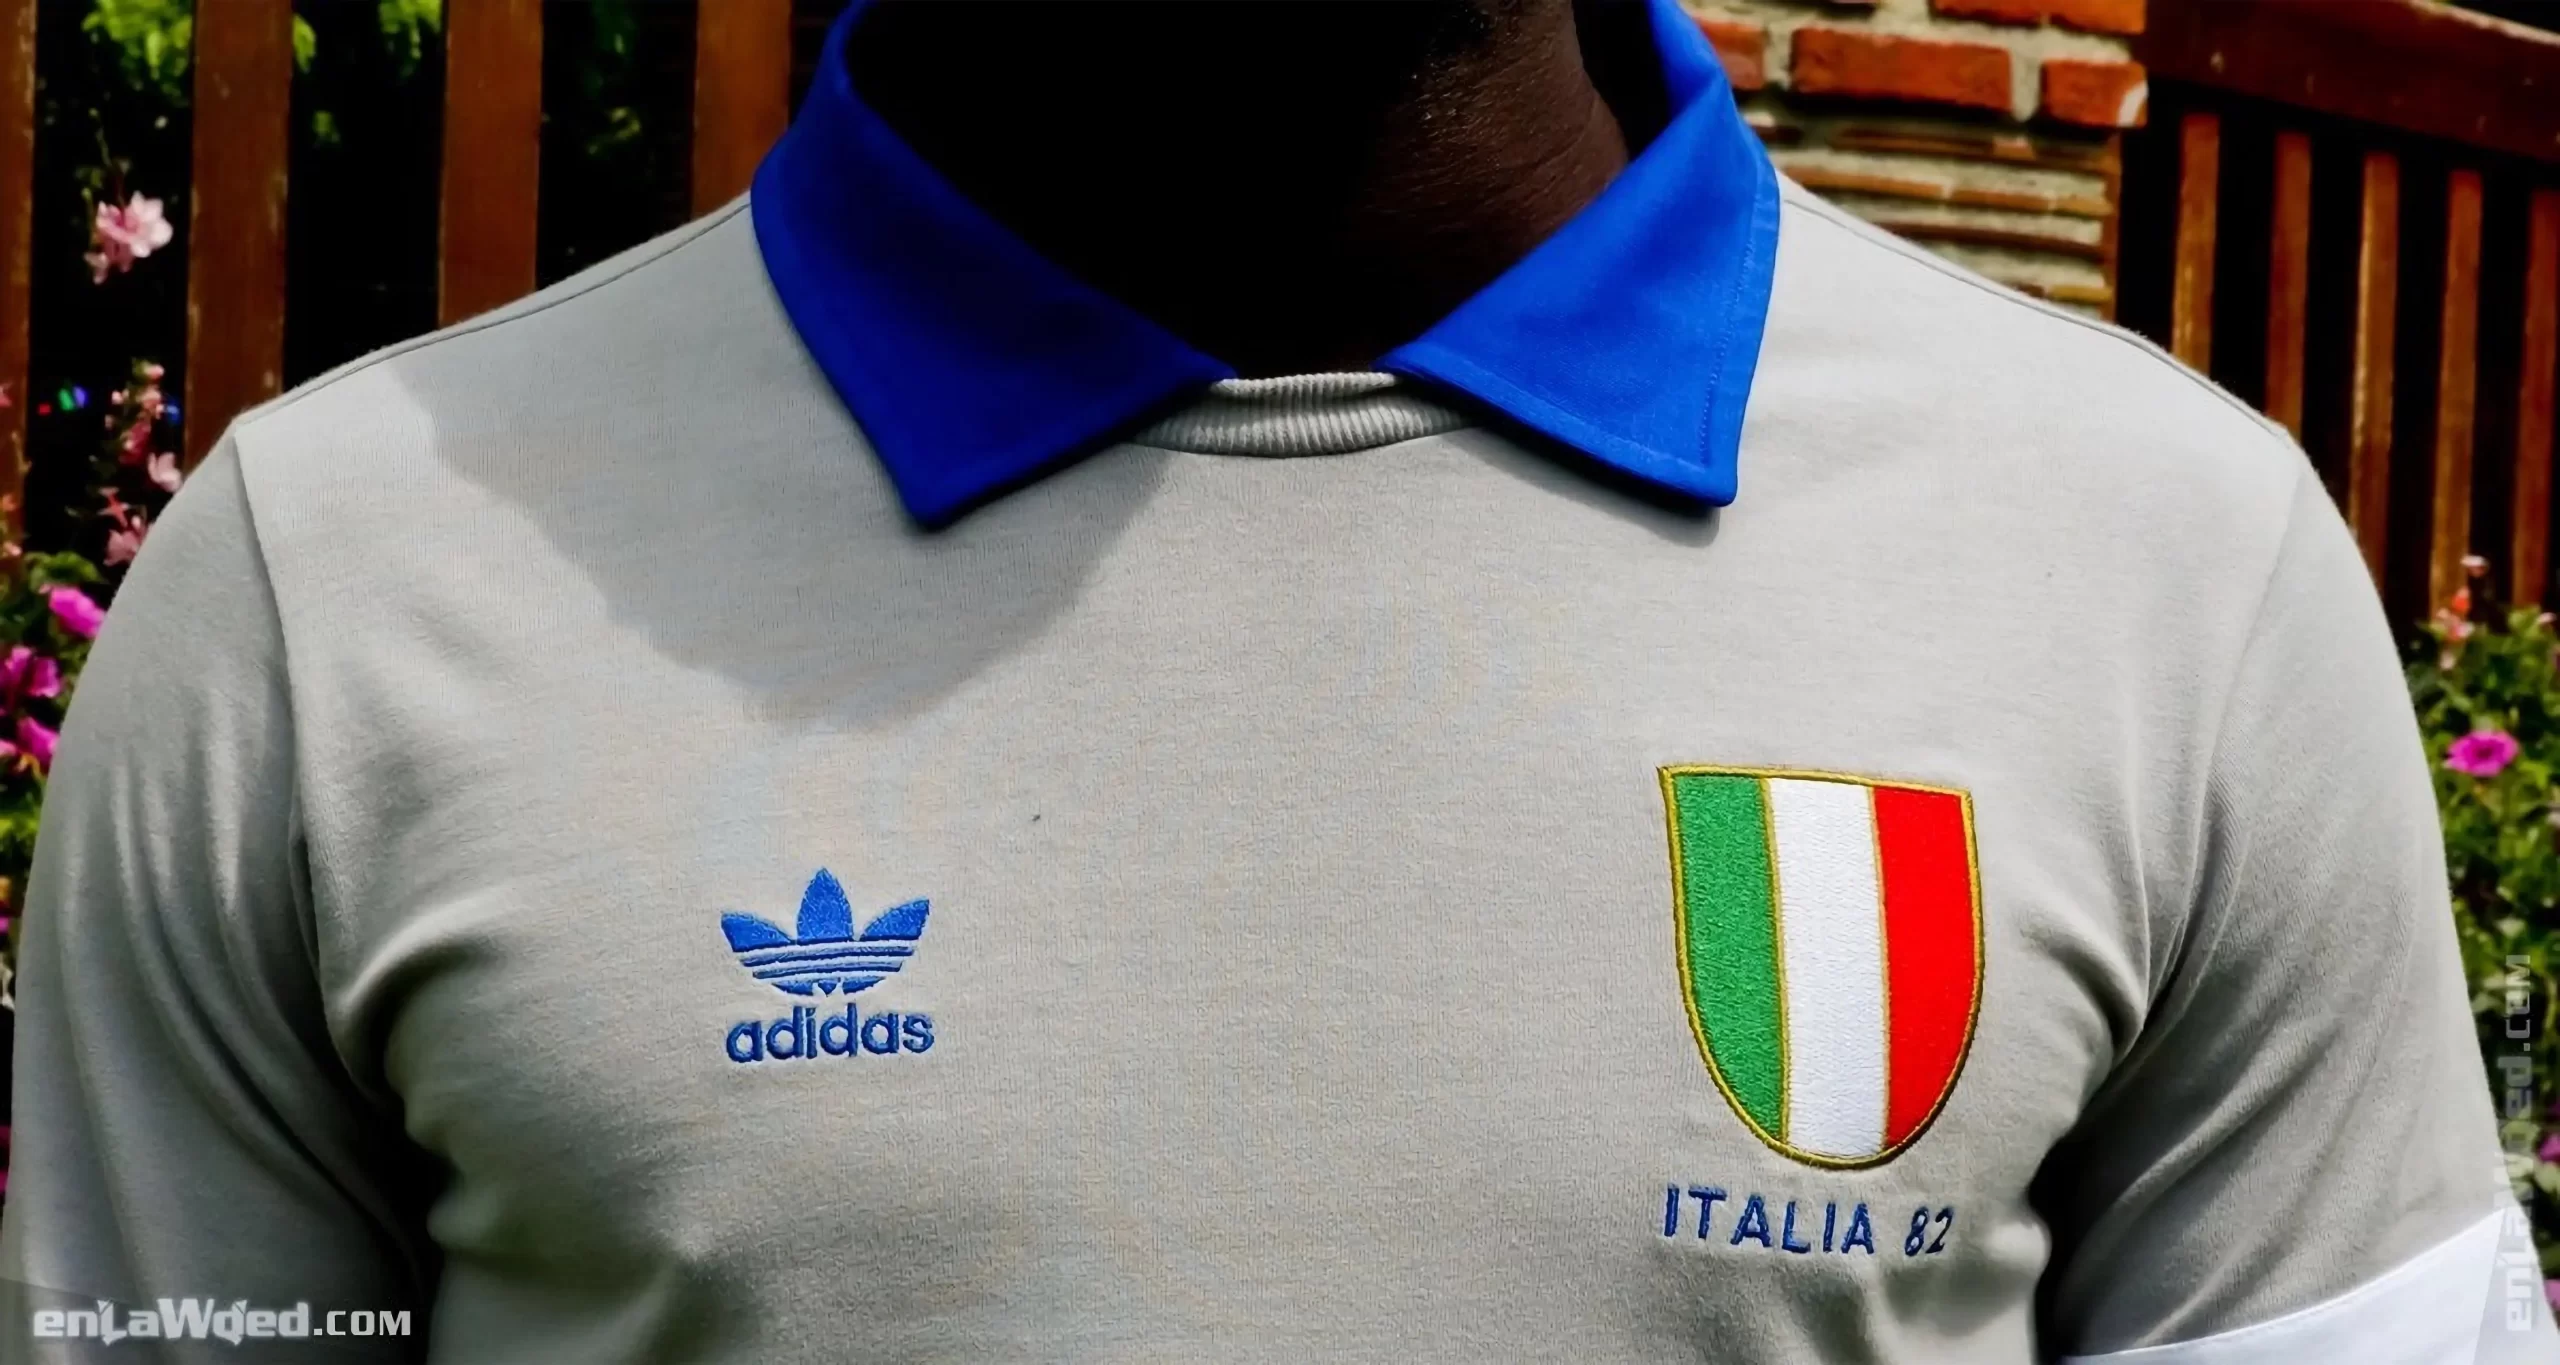 Men’s 2006 Italia ’82 Forza Azzurri LS by Adidas Originals: Joyous (EnLawded.com file #lmcf7p7q0le9d5cmwzmb)